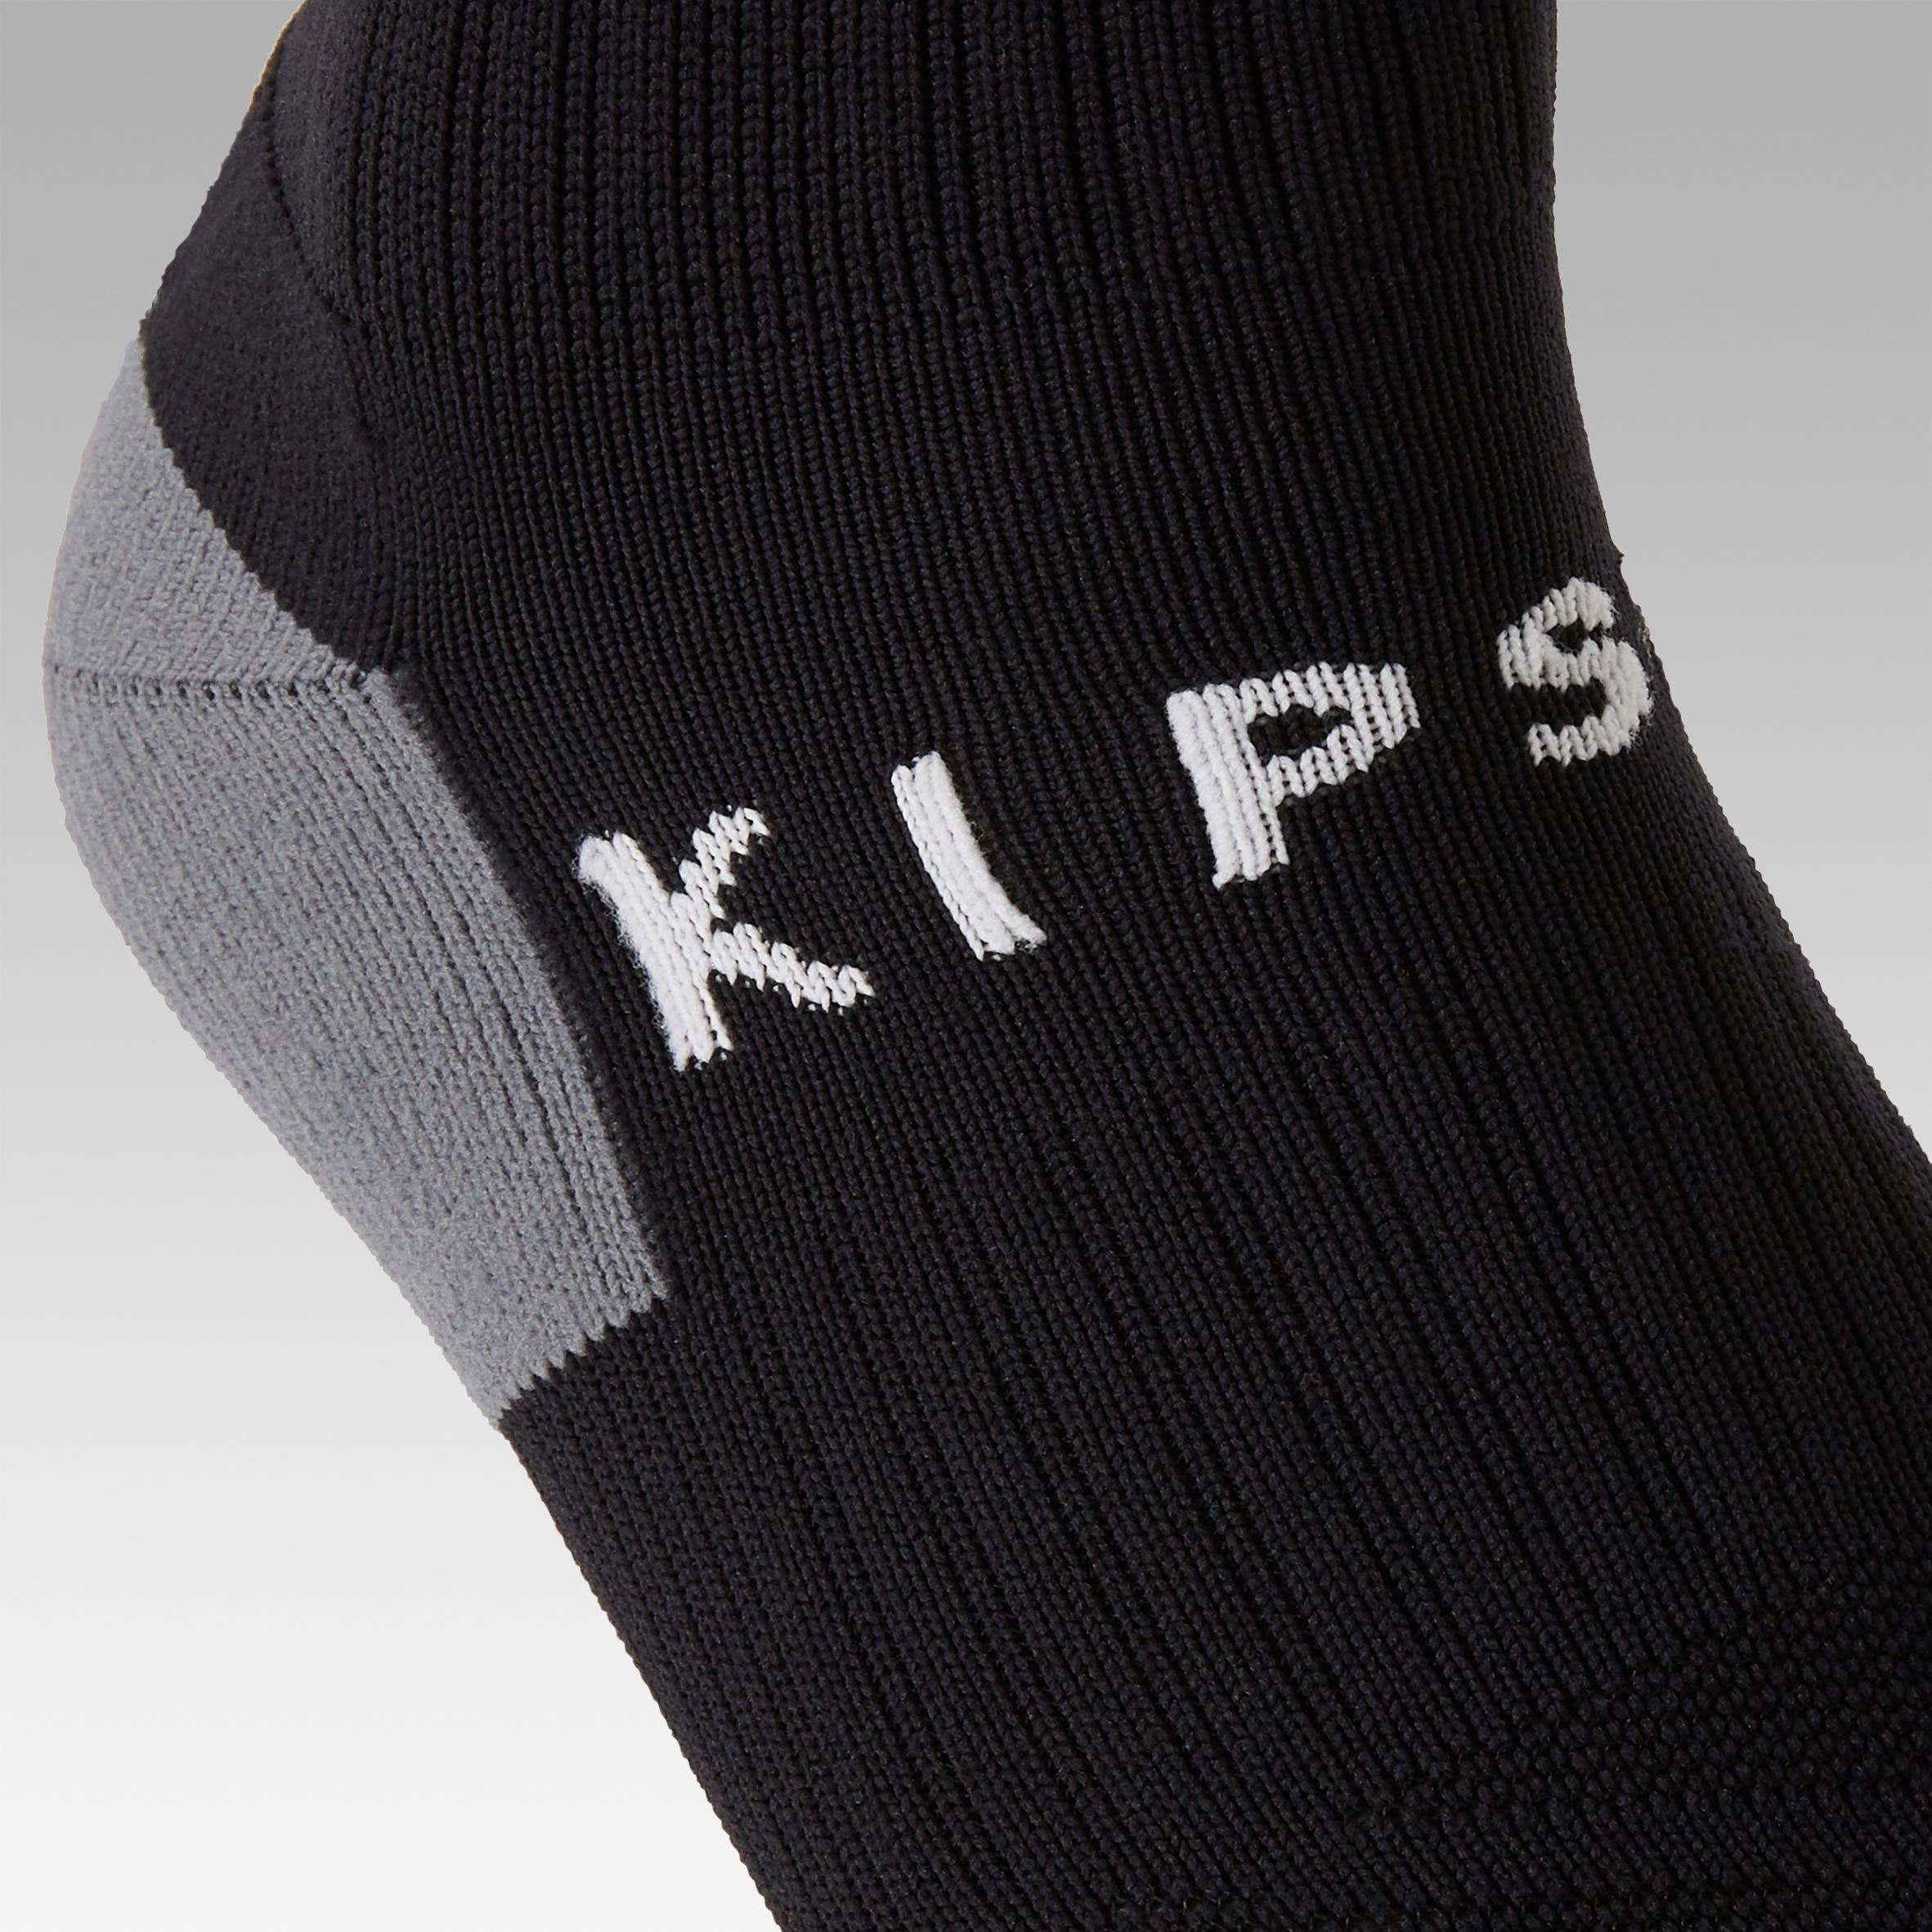 F500 Soccer Socks Black with Stripes - Kids' - KIPSTA